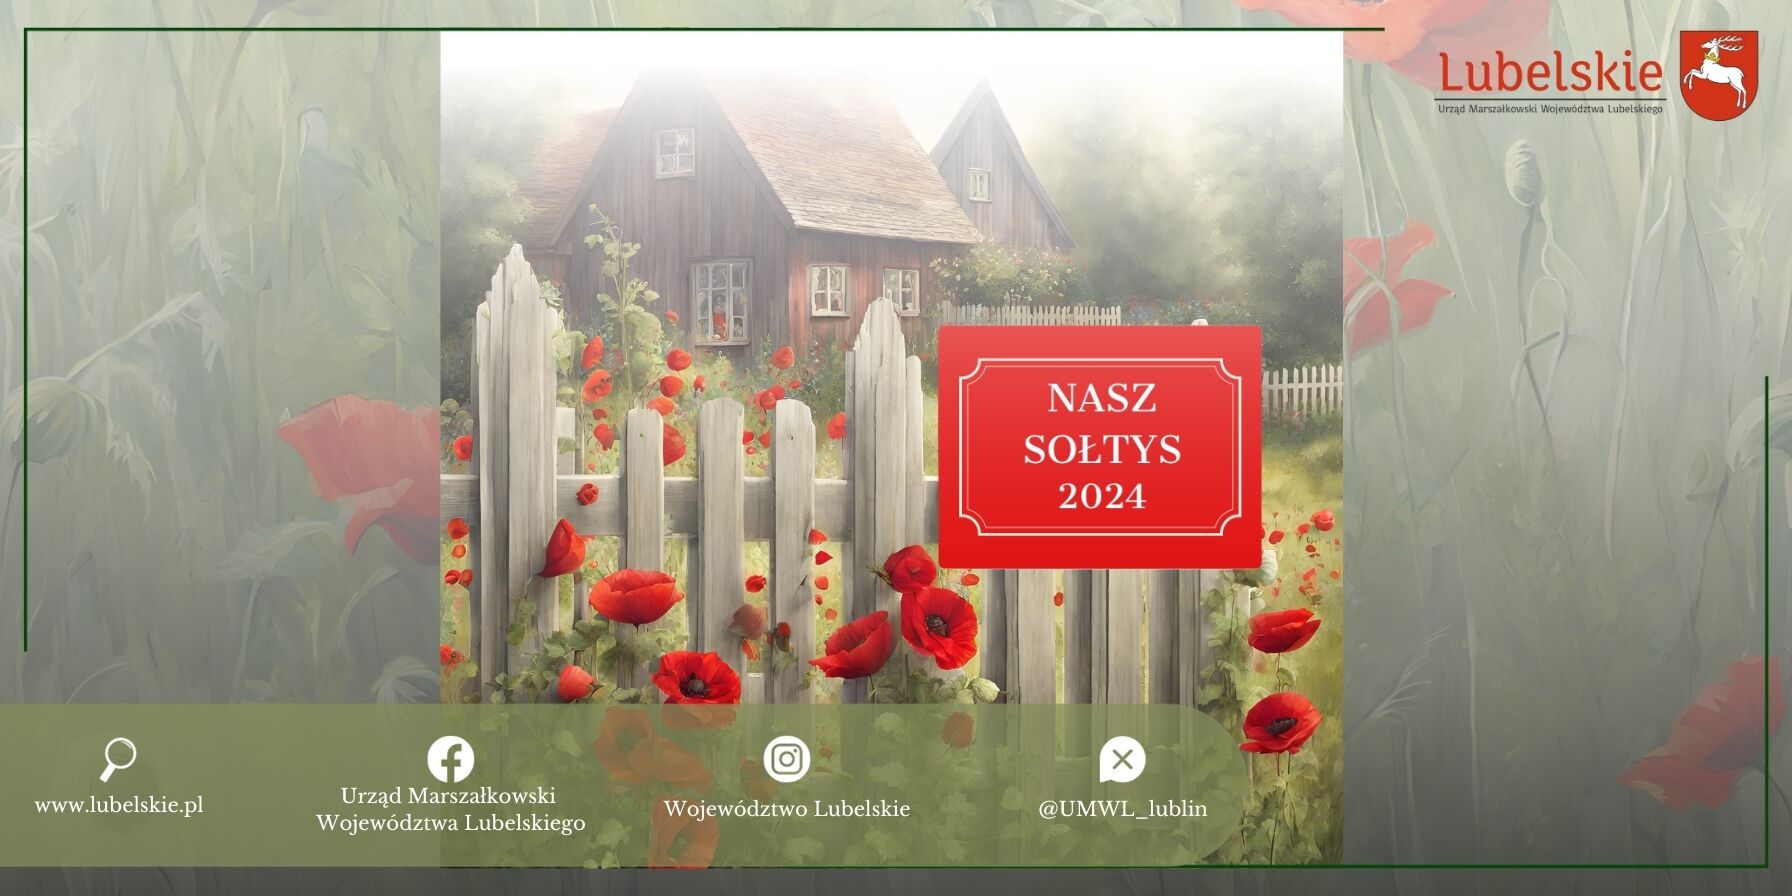 Grafika promująca "Nasz Sołtys 2024" z obrazem idyllicznej wiejskiej chaty otoczonej przez kwitnące czerwone maki, za drewnianym płotem, z logo Lubelskiego i informacją o wspierających urzędach.